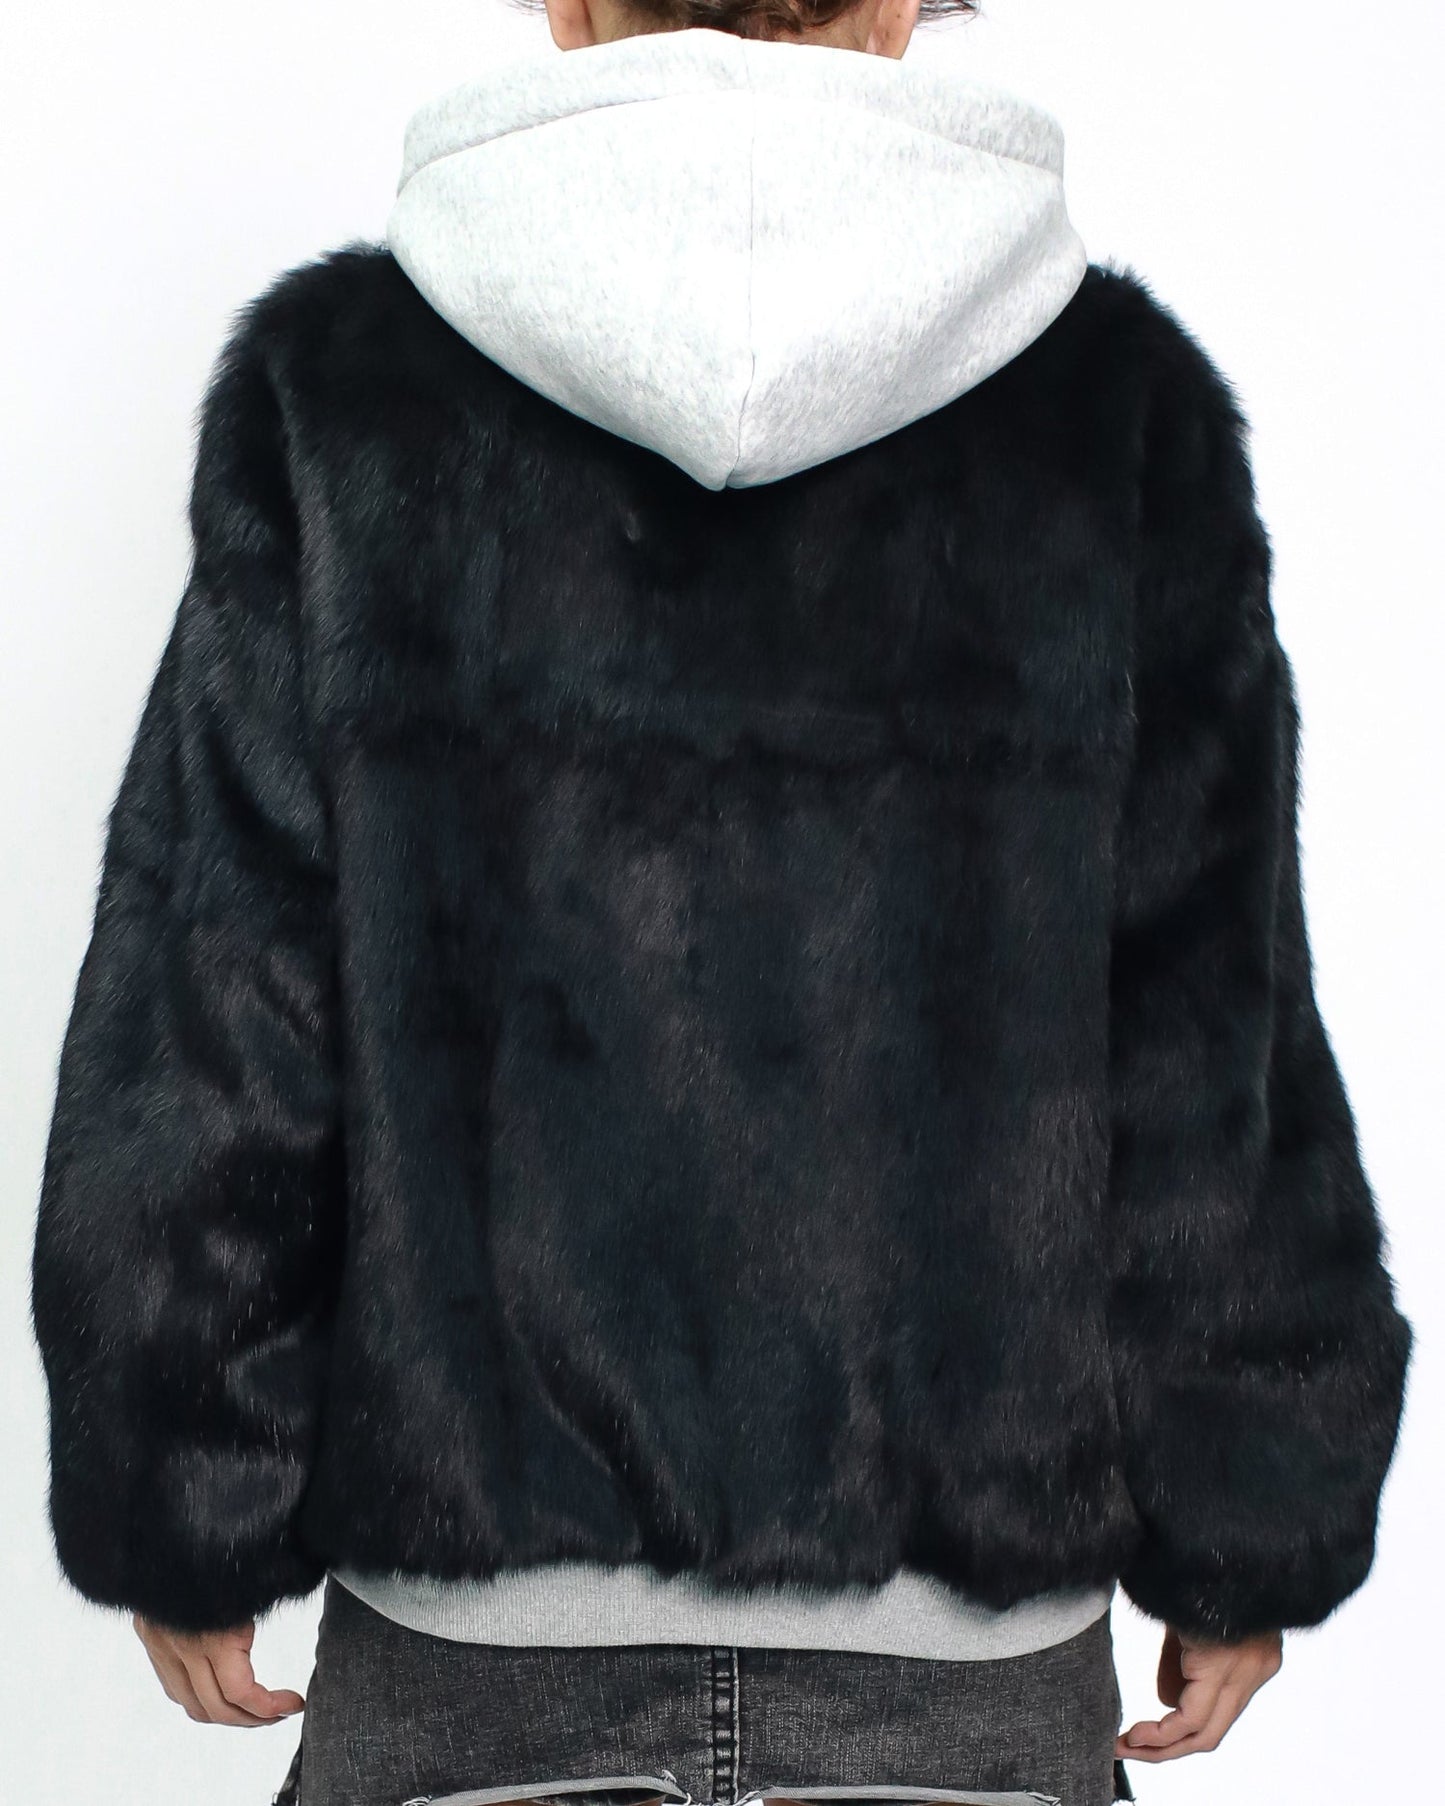 灰色和黑色毛茸茸的連帽運動衫絎縫夾克 *預購*